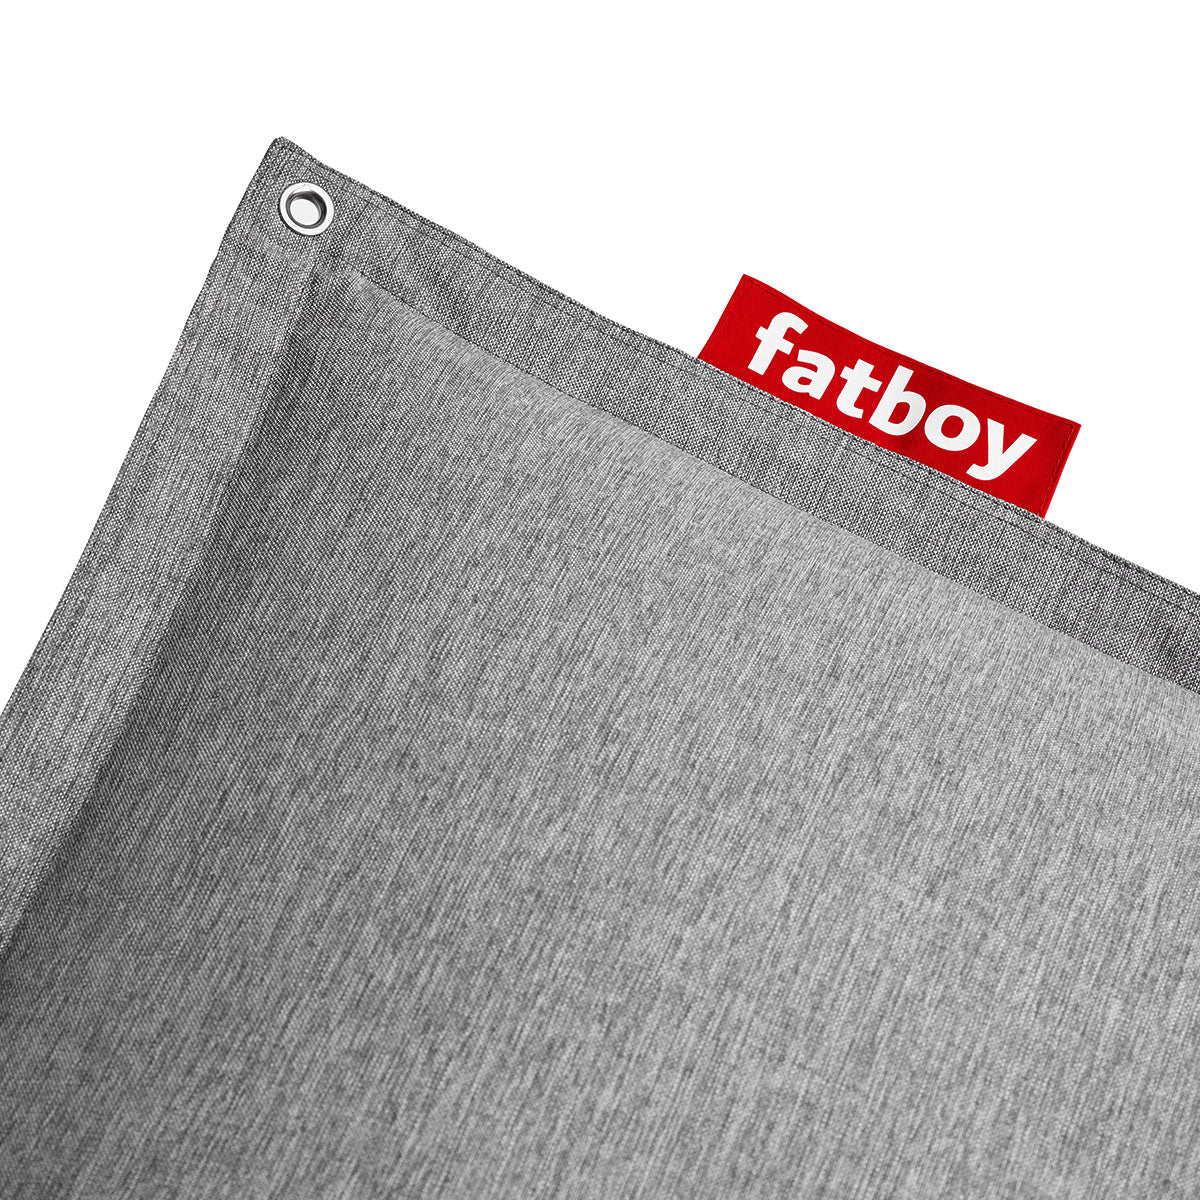 Original Floatzac - Fatboy